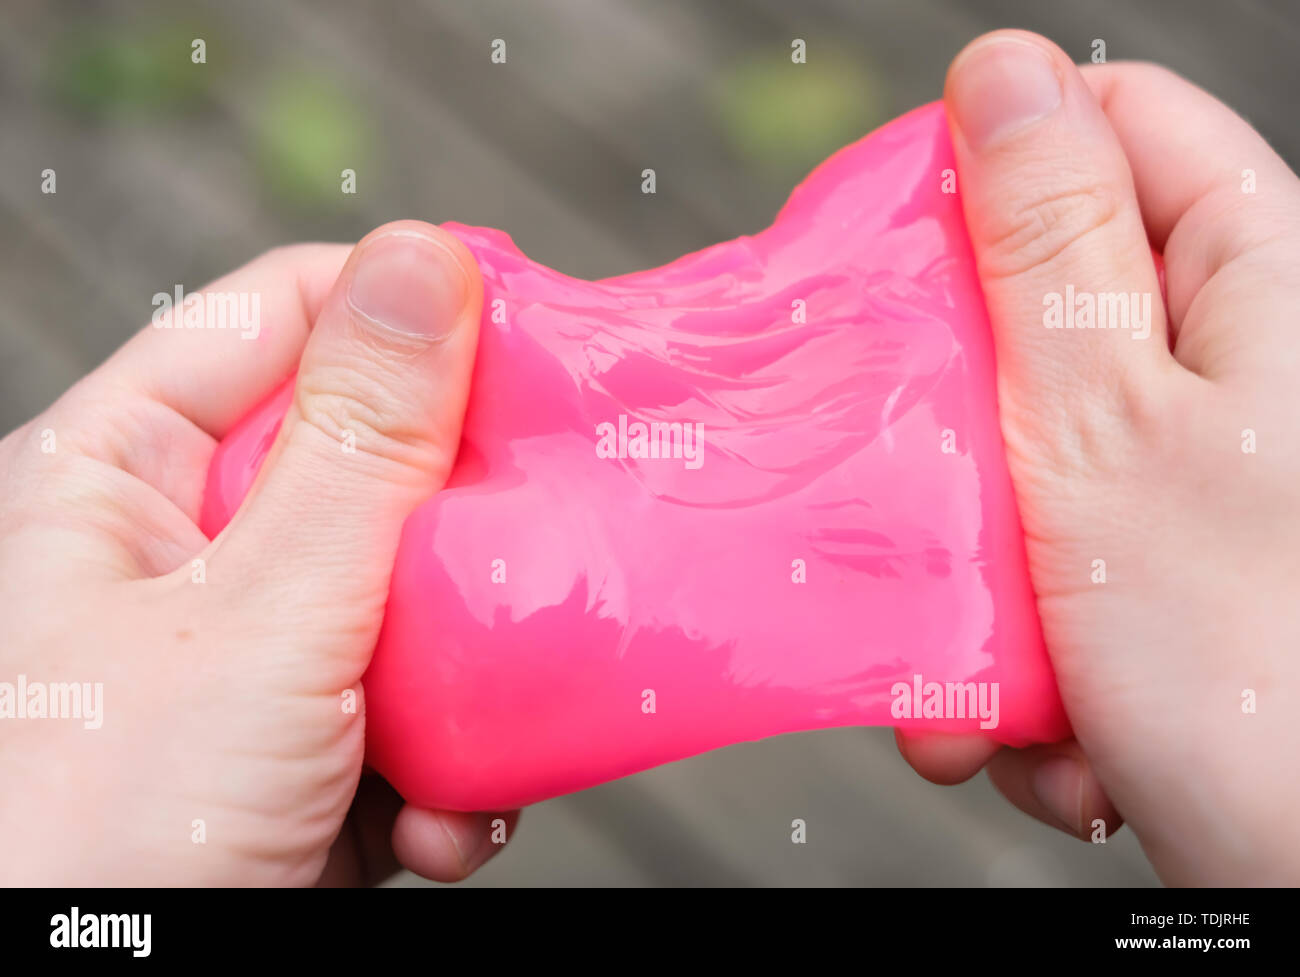 Rosa juguete antiestrés limo en las manos. Luchando contra la ansiedad y el estrés. Juego creativo experimento para los niños. Foto de stock